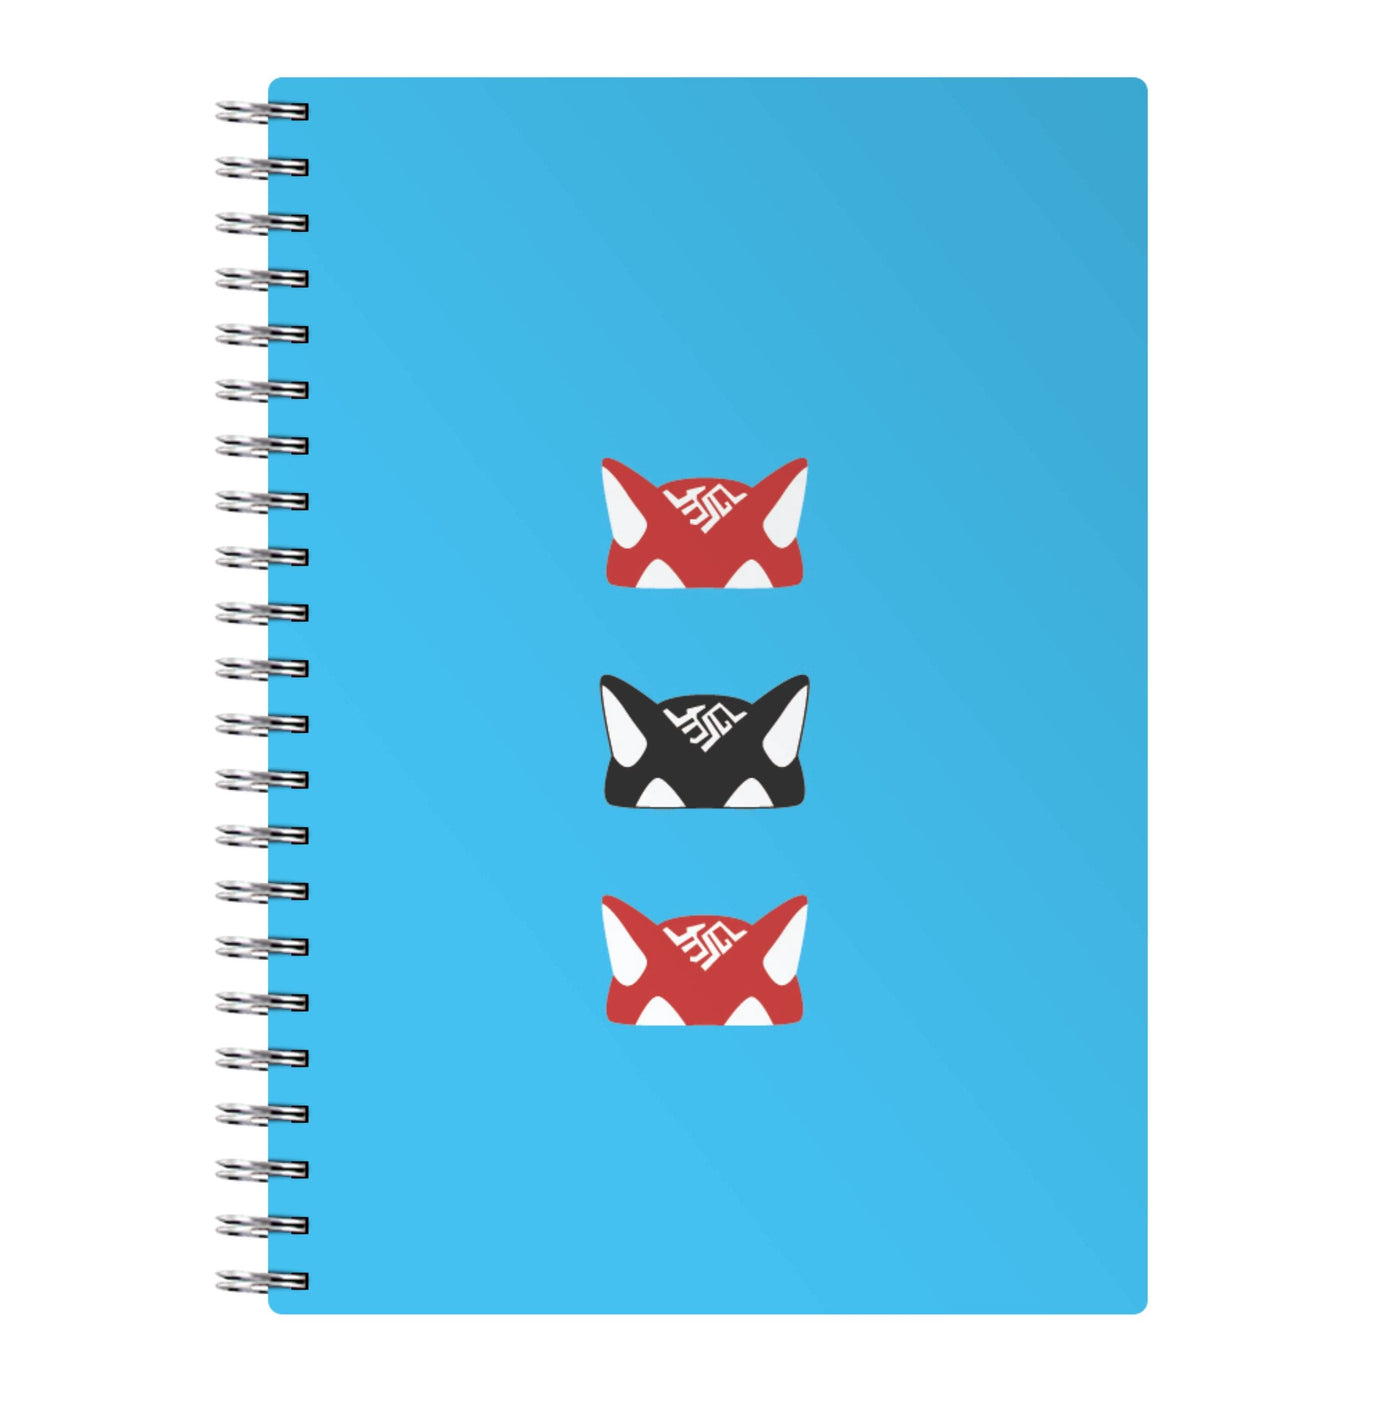 Kiroko 's Hat - Overwatch Notebook